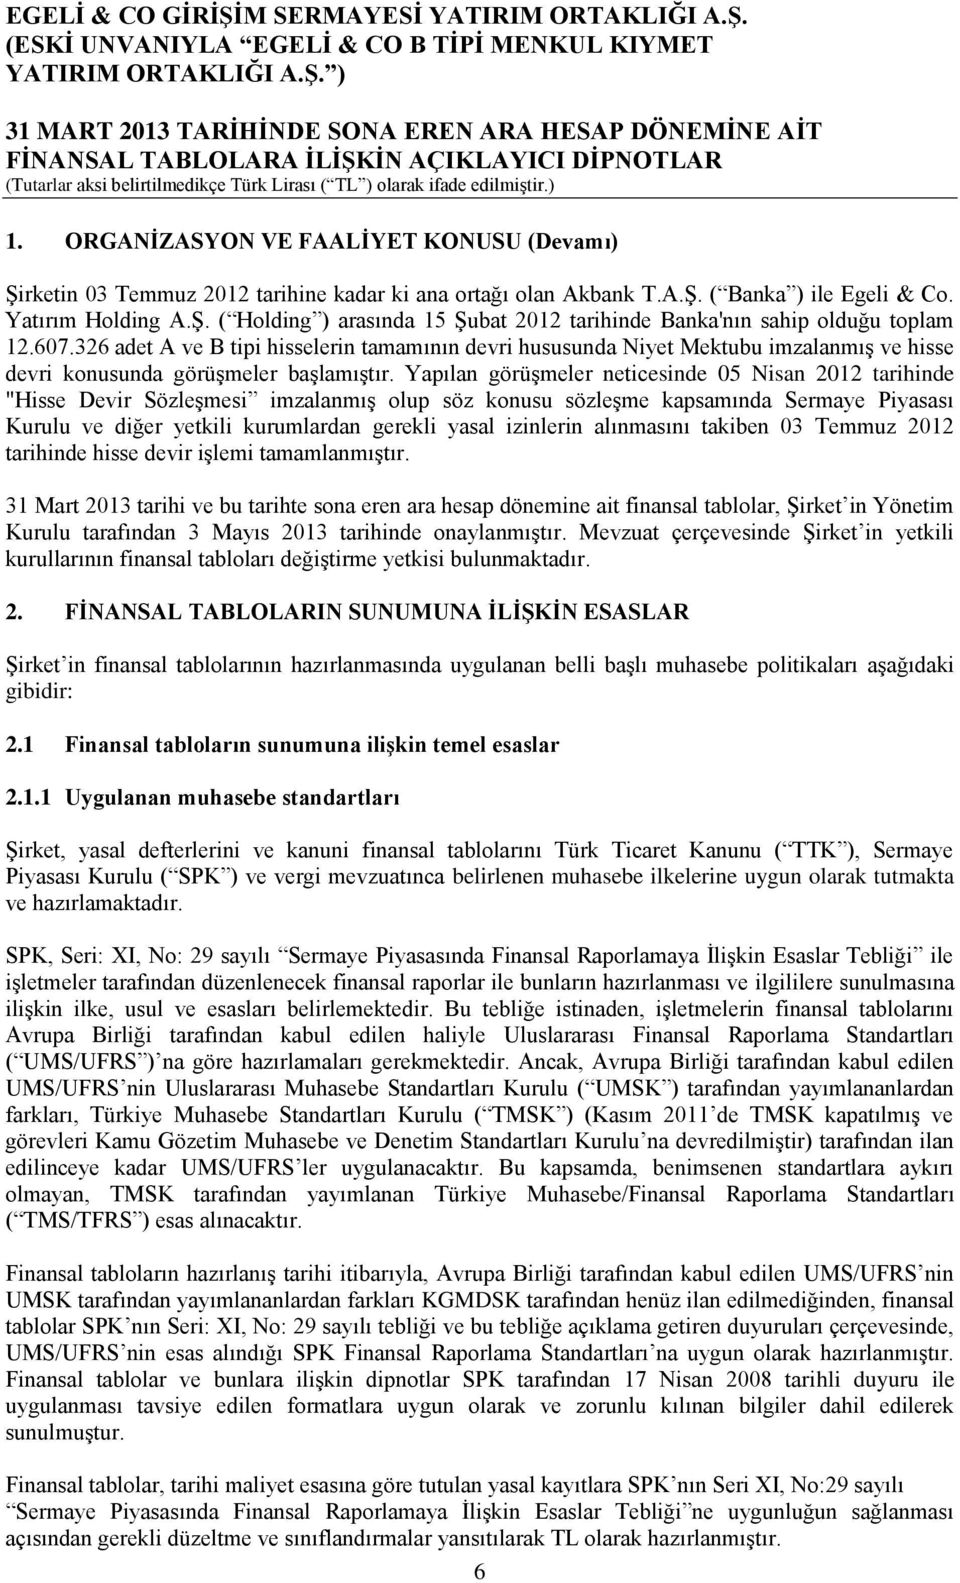 Yapılan görüşmeler neticesinde 05 Nisan 2012 tarihinde "Hisse Devir Sözleşmesi imzalanmış olup söz konusu sözleşme kapsamında Sermaye Piyasası Kurulu ve diğer yetkili kurumlardan gerekli yasal